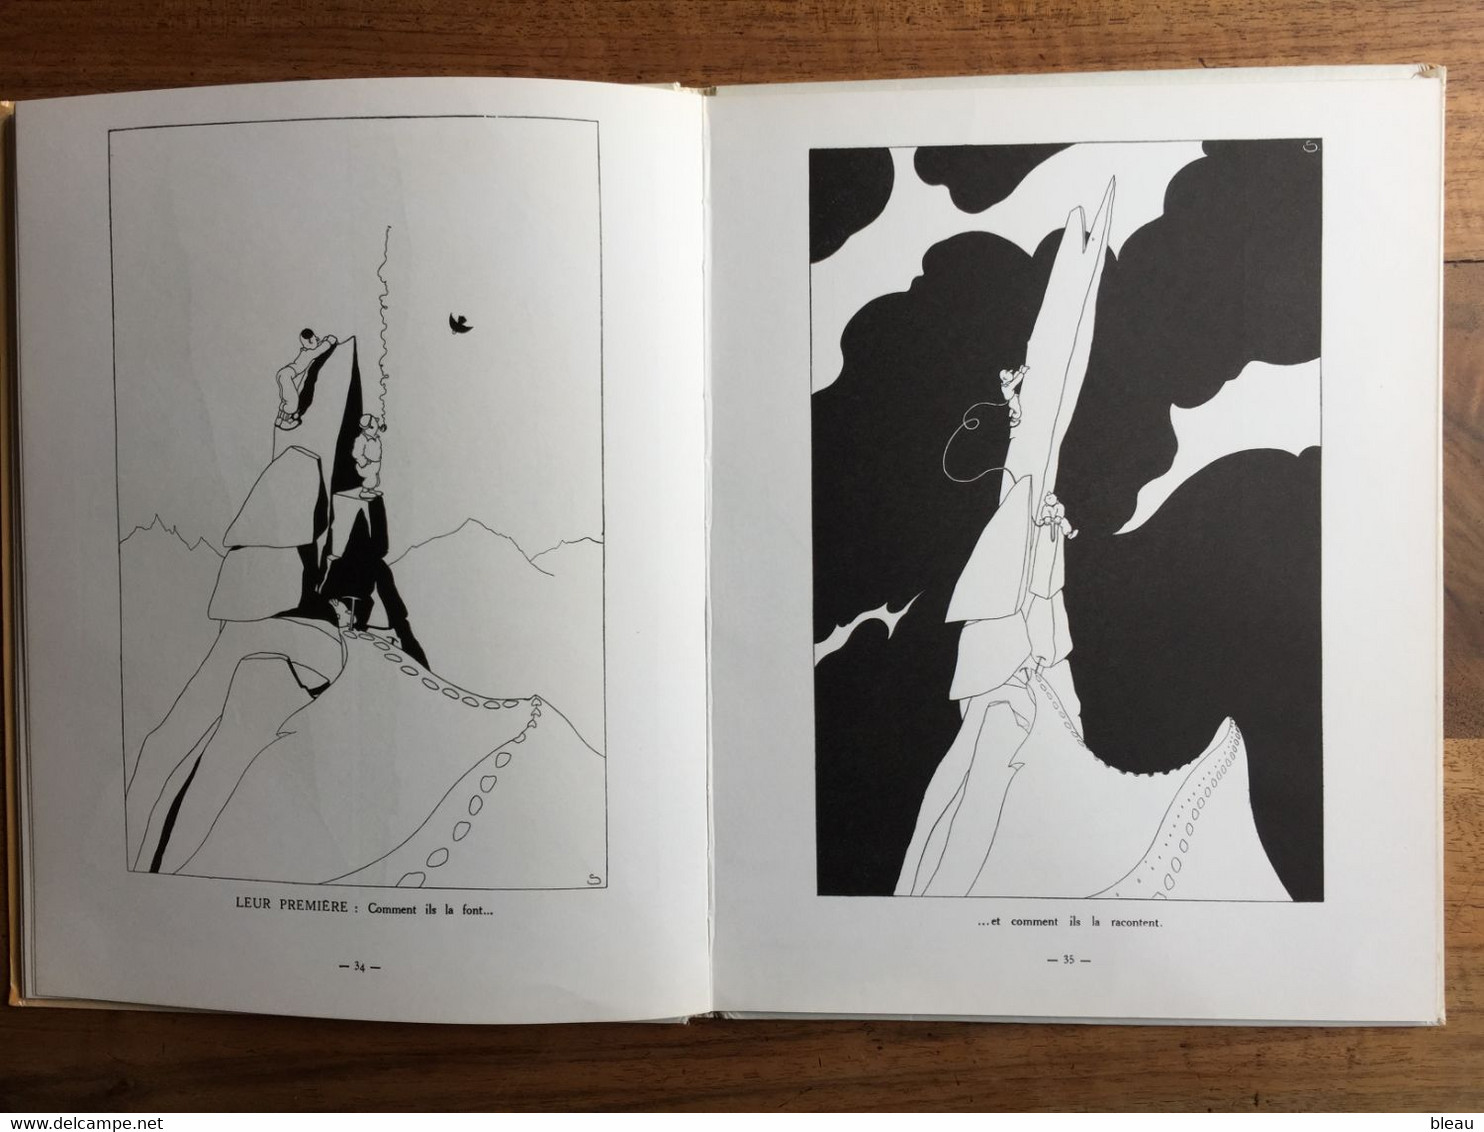 (alpinisme) SAMIVEL : Sous l'oeil des choucas ou les plaisirs de l'Alpinisme, 1966.